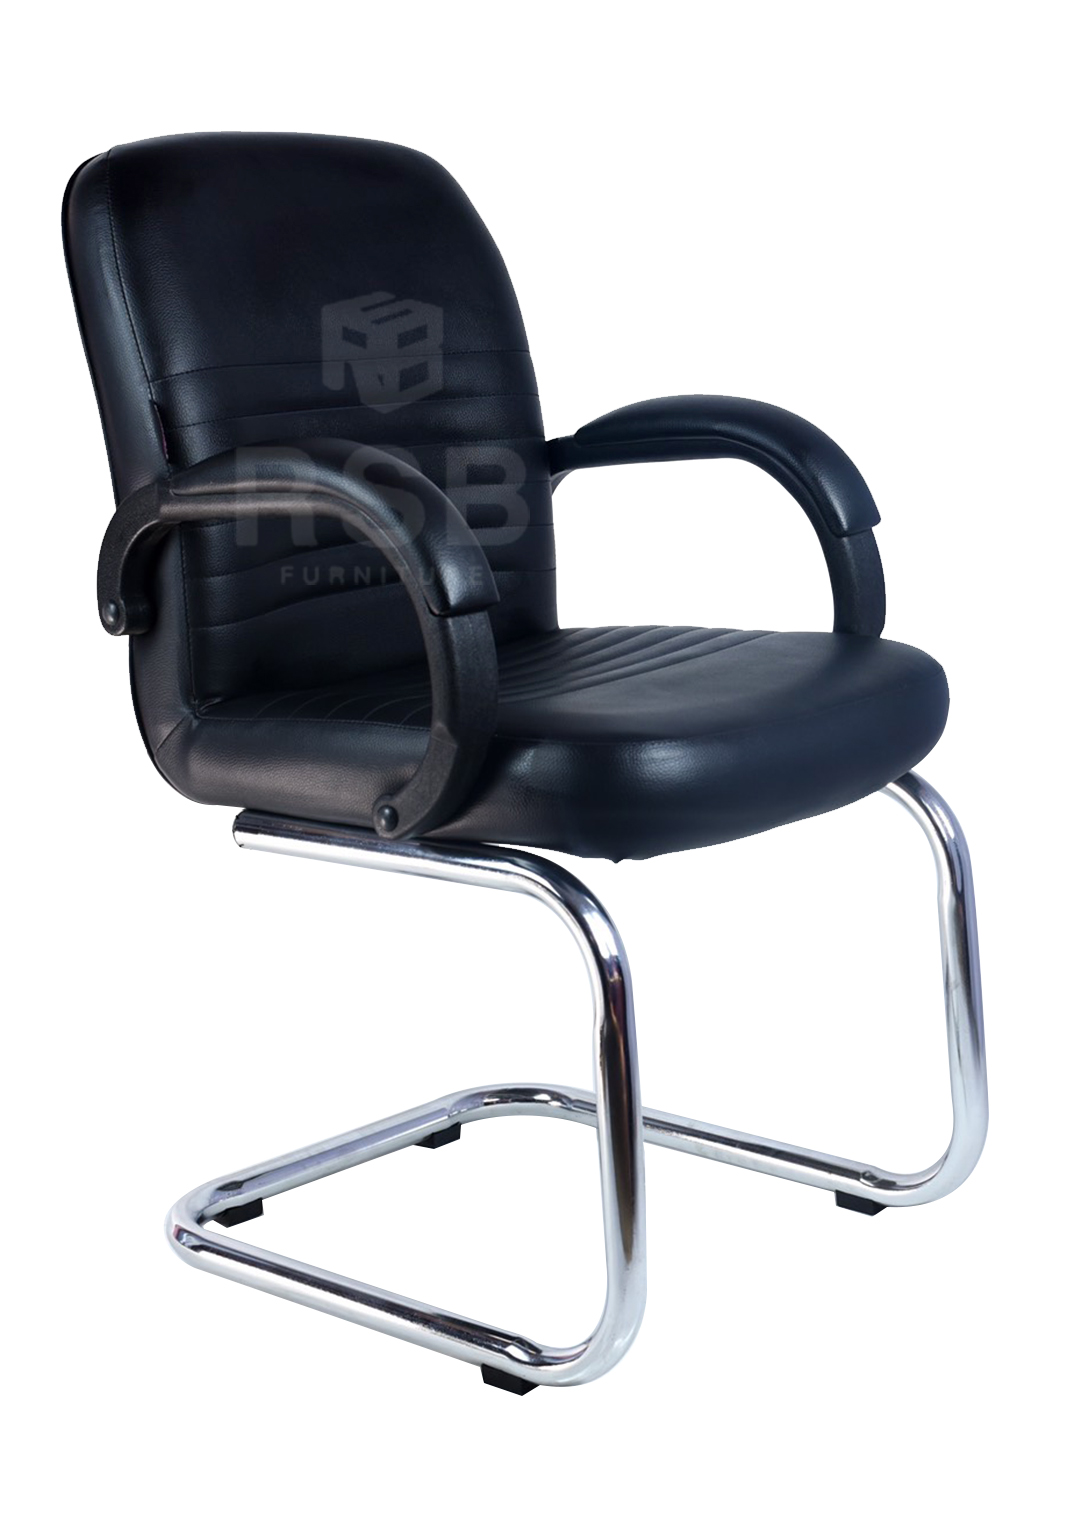 เก้าอี้ทำงาน ที่ท้าวแขนหุ้มหนัง ขาตัว C รับน้ำหนัก 120 KG รหัส 3014